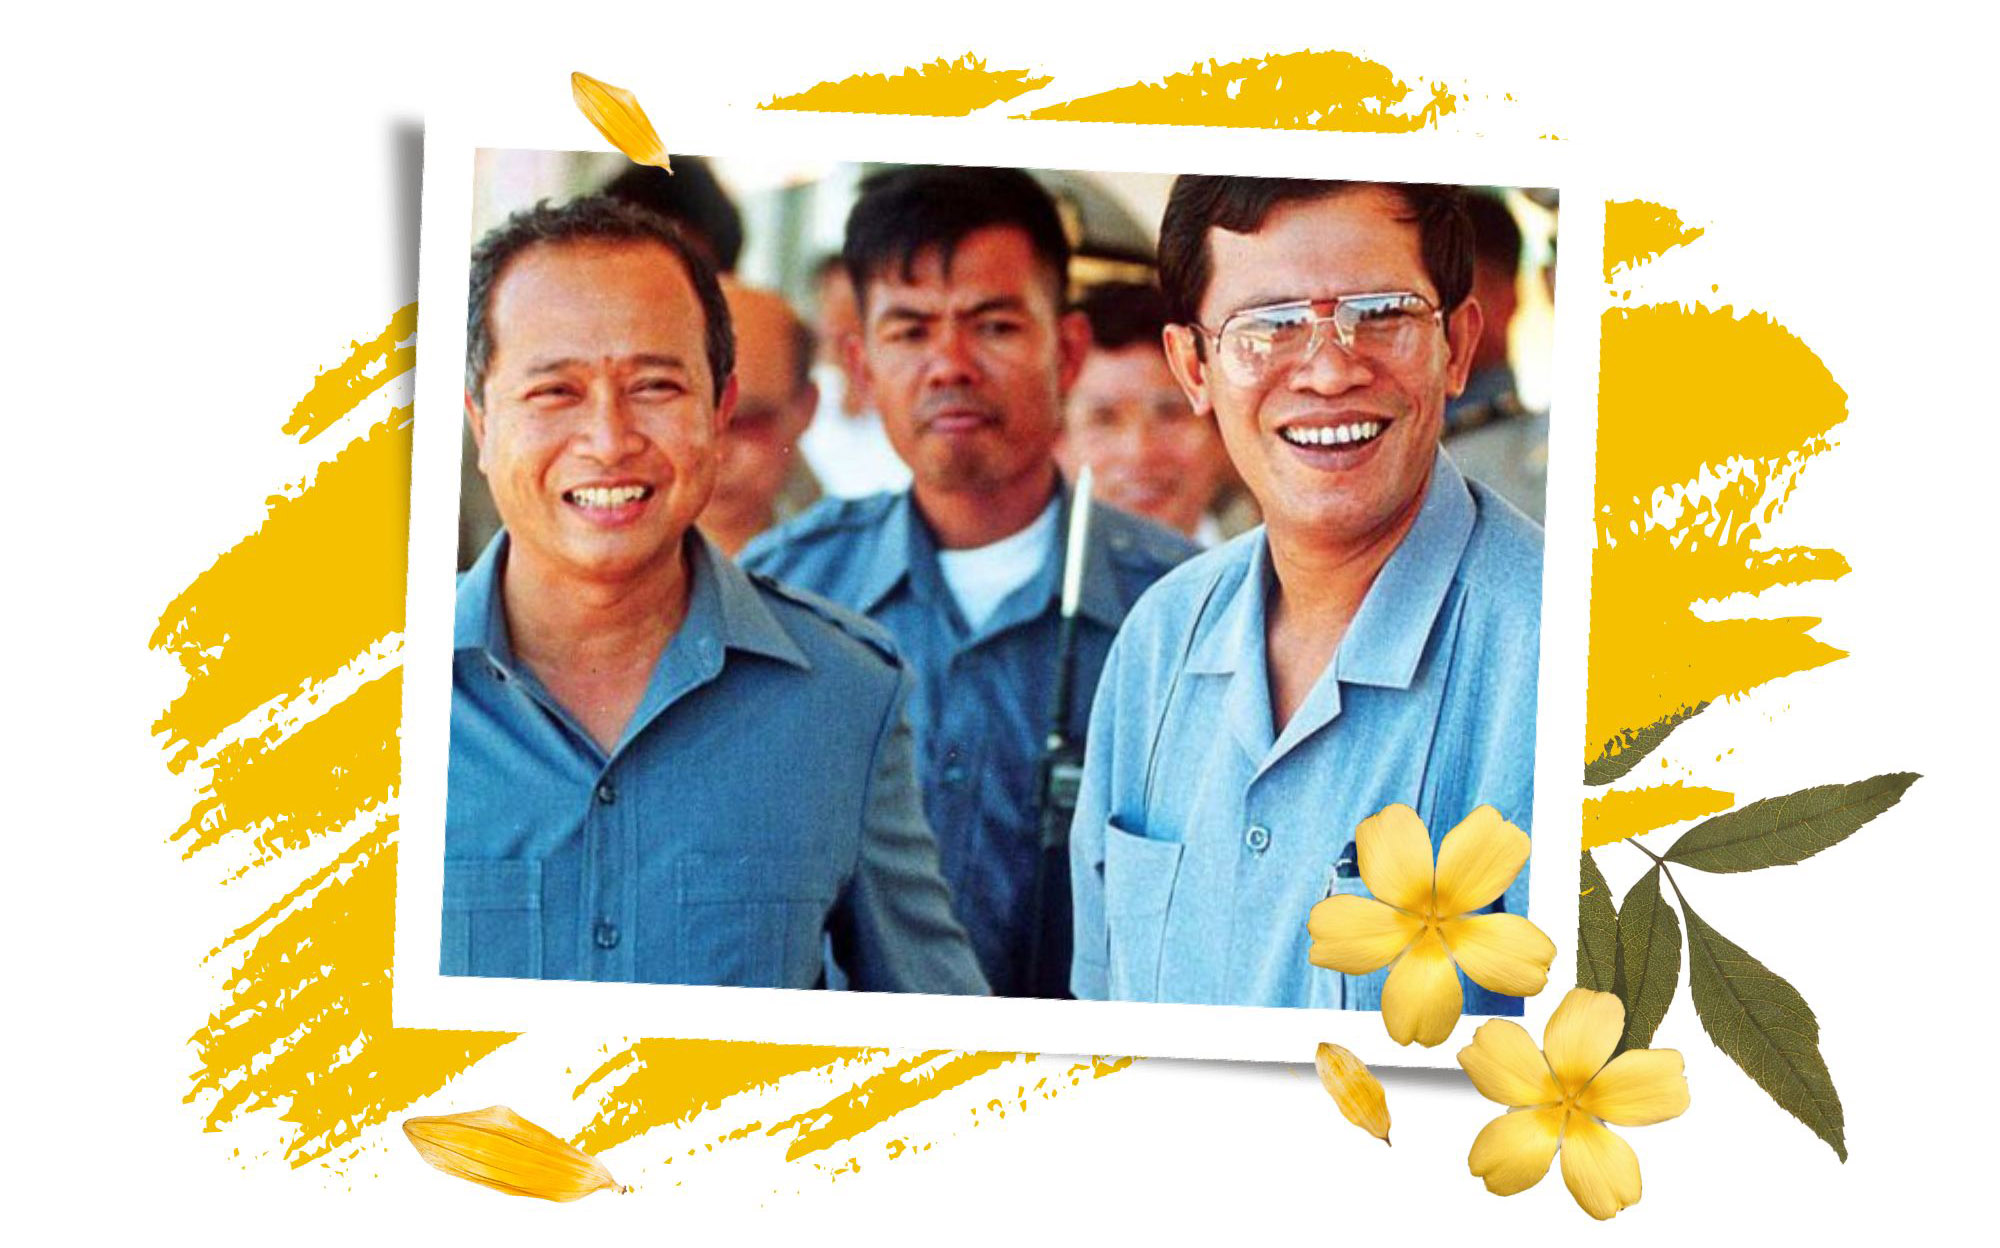 Thủ tướng Hun Sen: Người khởi tạo nền hòa bình Campuchia - Bài 2: Kiến trúc sư Hiệp định hòa bình Paris về Campuchia